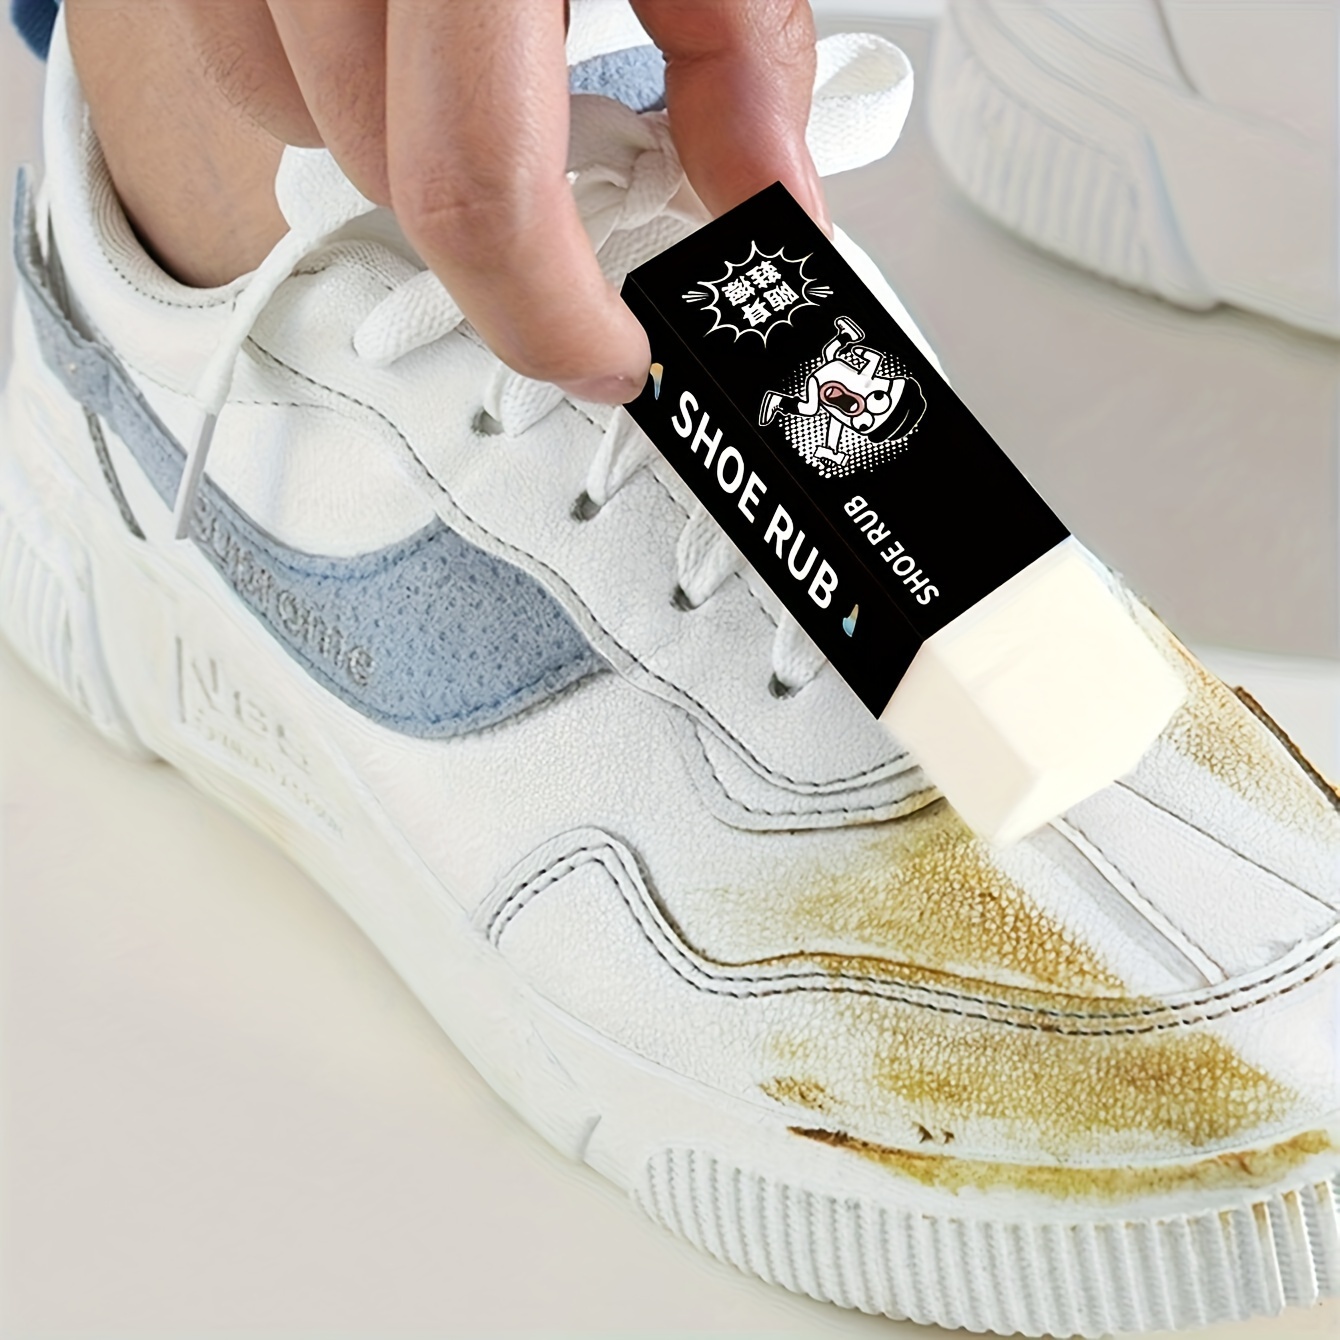  Crema de limpieza de zapatos blancos de 7.05 oz, crema  quitamanchas para zapatos mágicos, limpieza de zapatos blancos, limpiador  de manchas para zapatos, crema de suciedad para zapatos, zapatos  reutilizables con